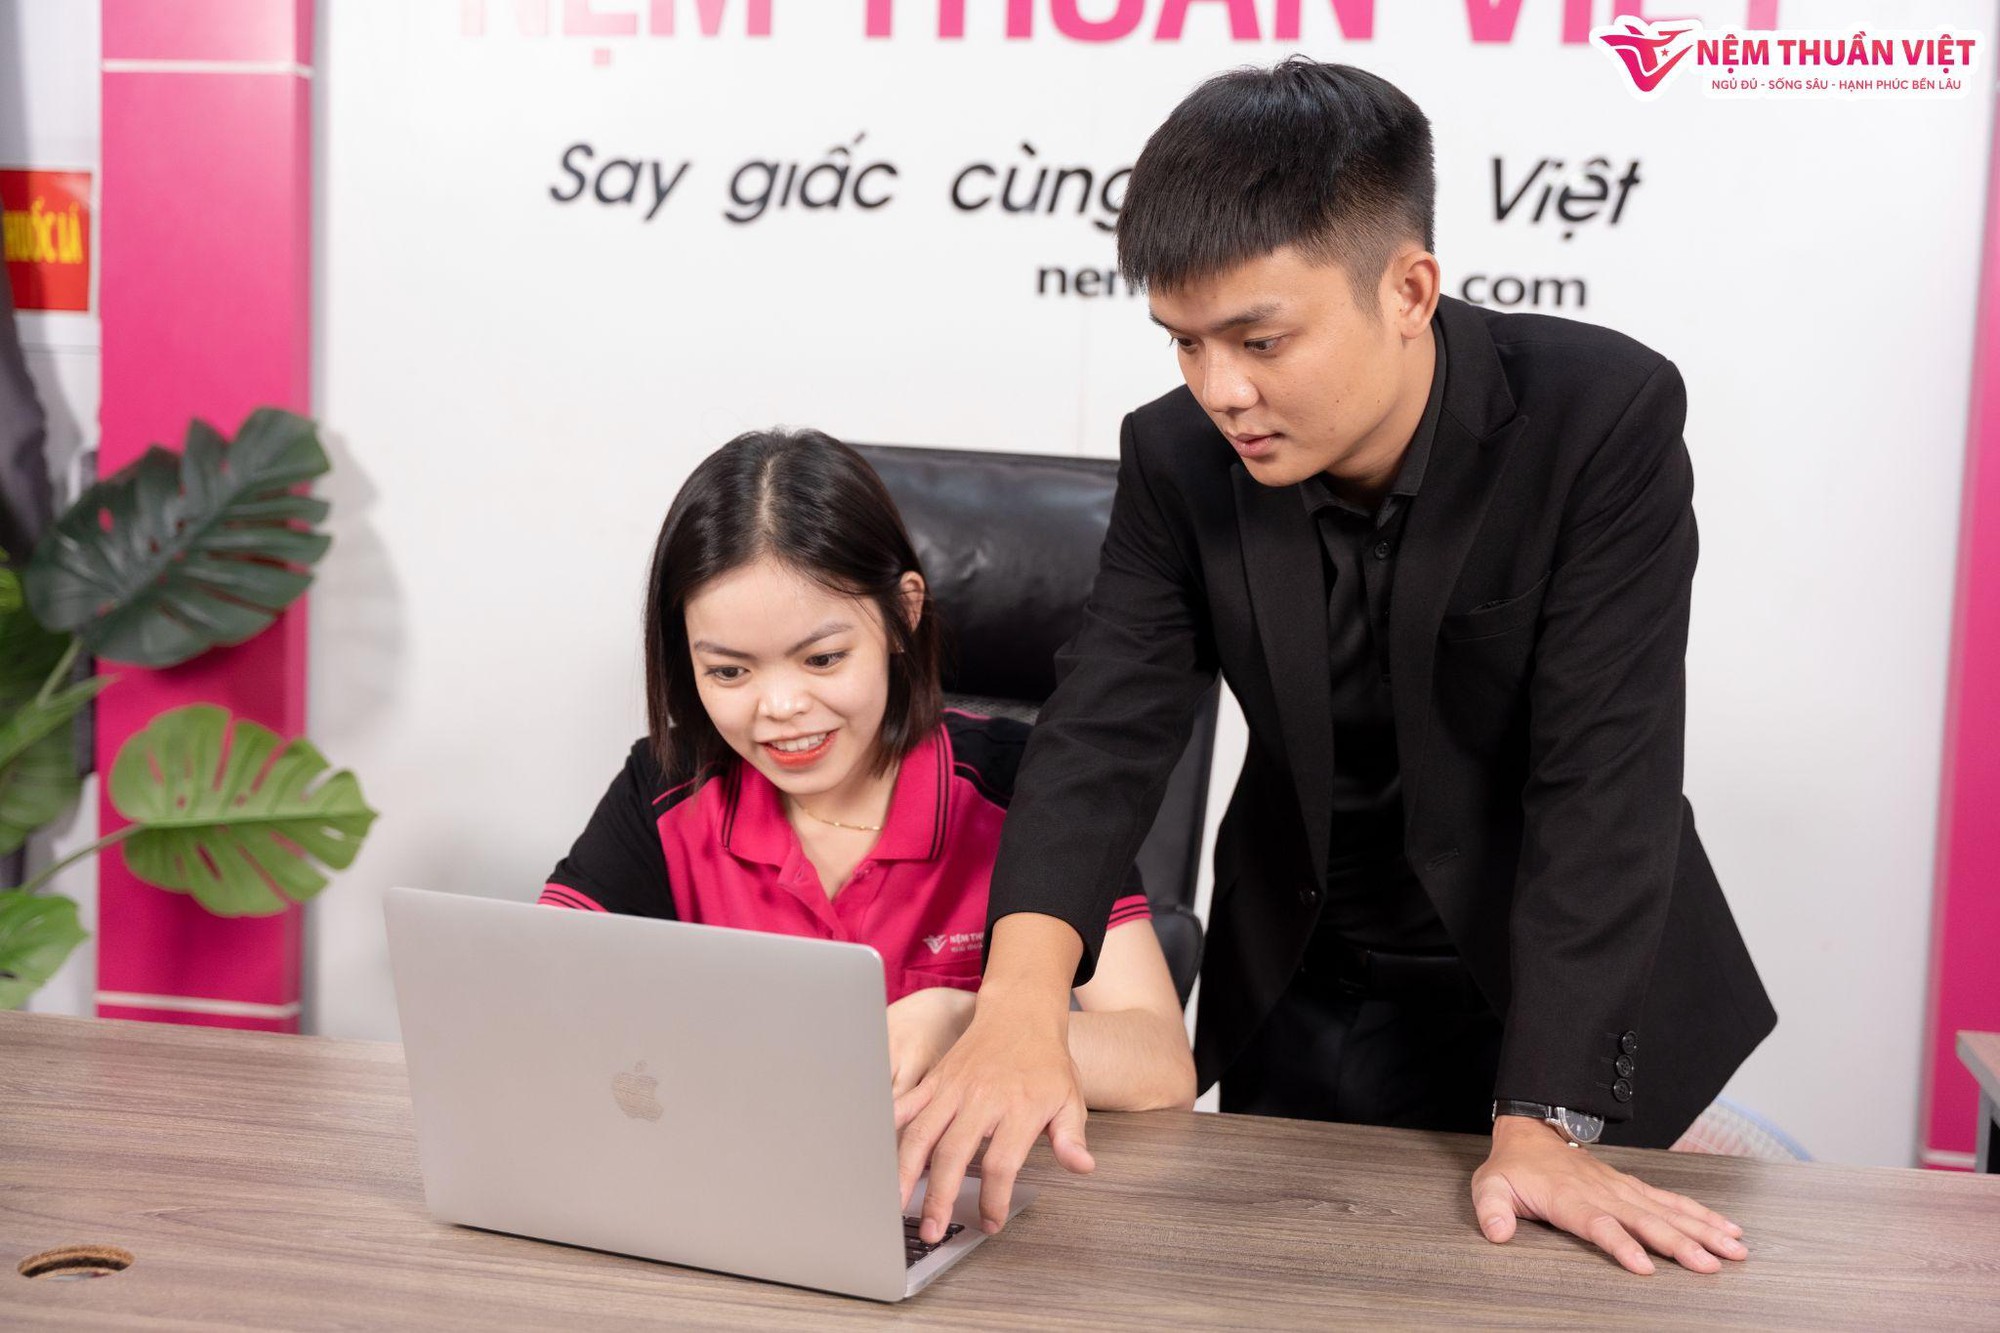 Nệm Thuần Việt sở hữu ban lãnh đạo đầy tài năng với CEO chỉ mới 26 tuổi - Ảnh 2.